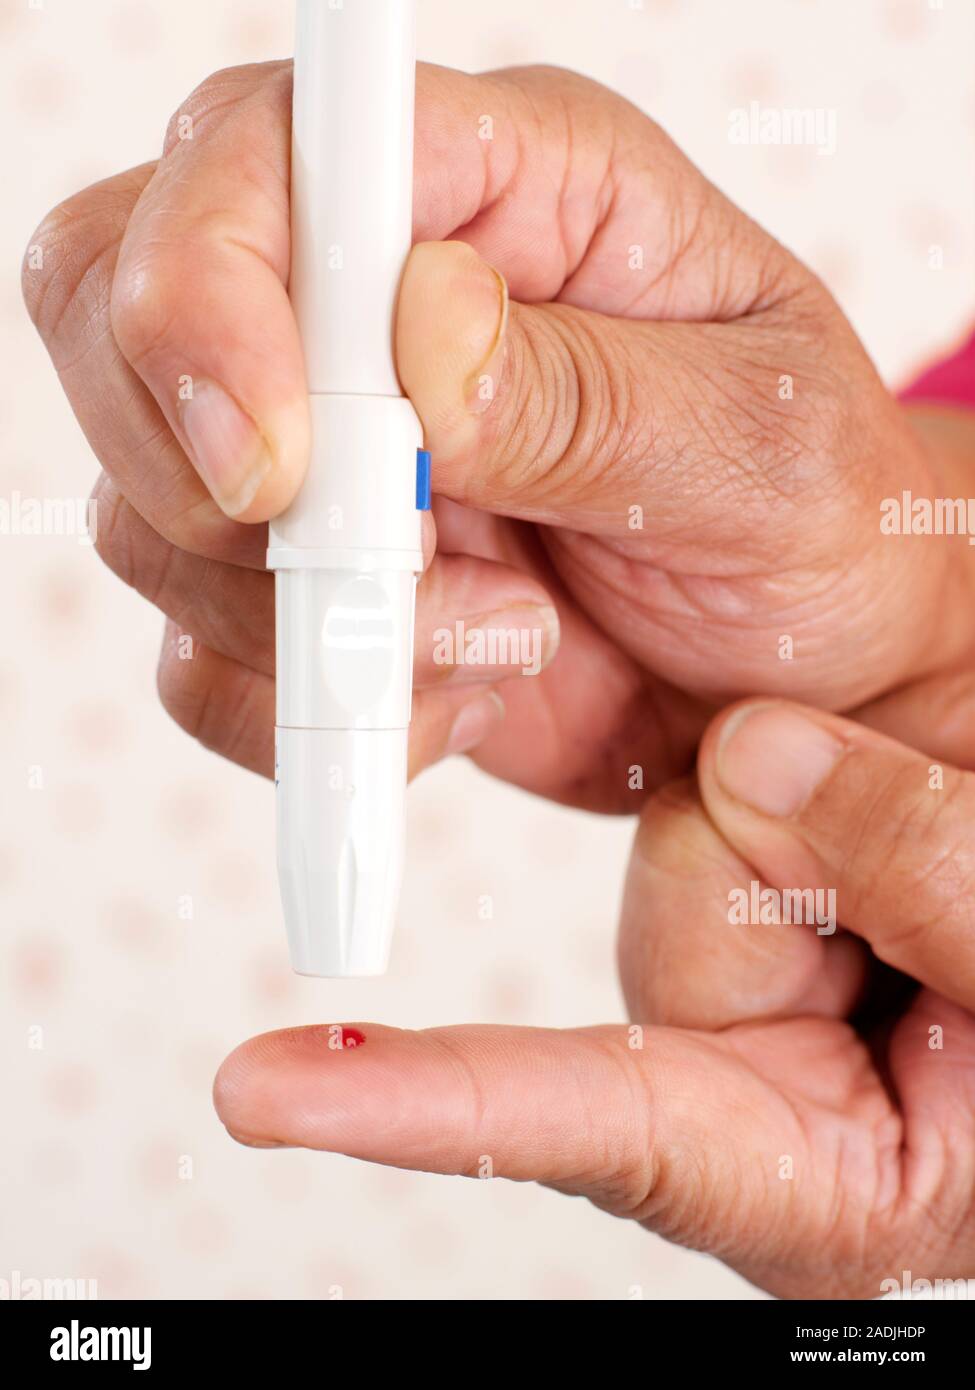 Modelo liberado. Prueba de glucosa en la sangre. Close-up de una mujer con  un lápiz como dispositivo lancing para pincharse el dedo antes de una  prueba de glucosa en la sangre. Los